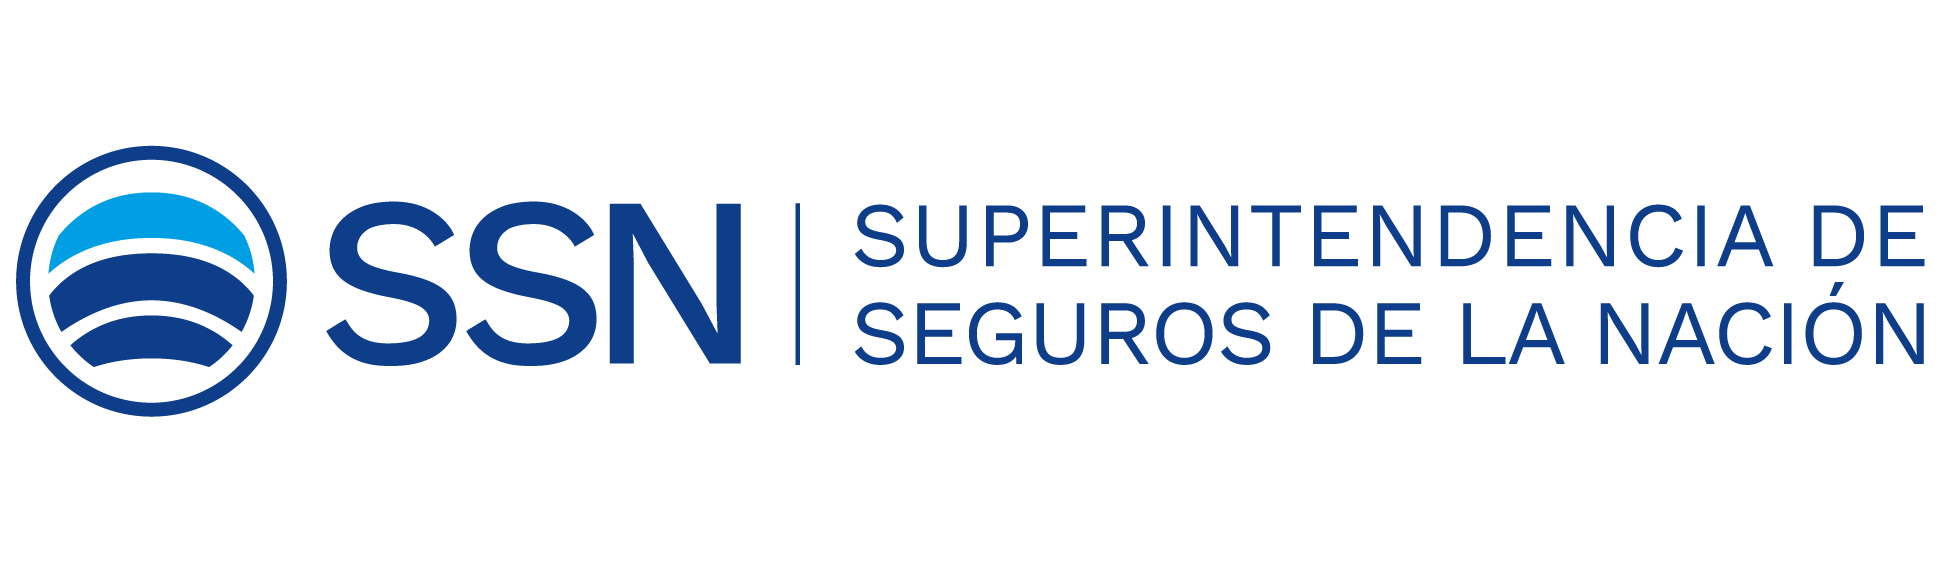 Logotipo superintendencia de seguros de la nación